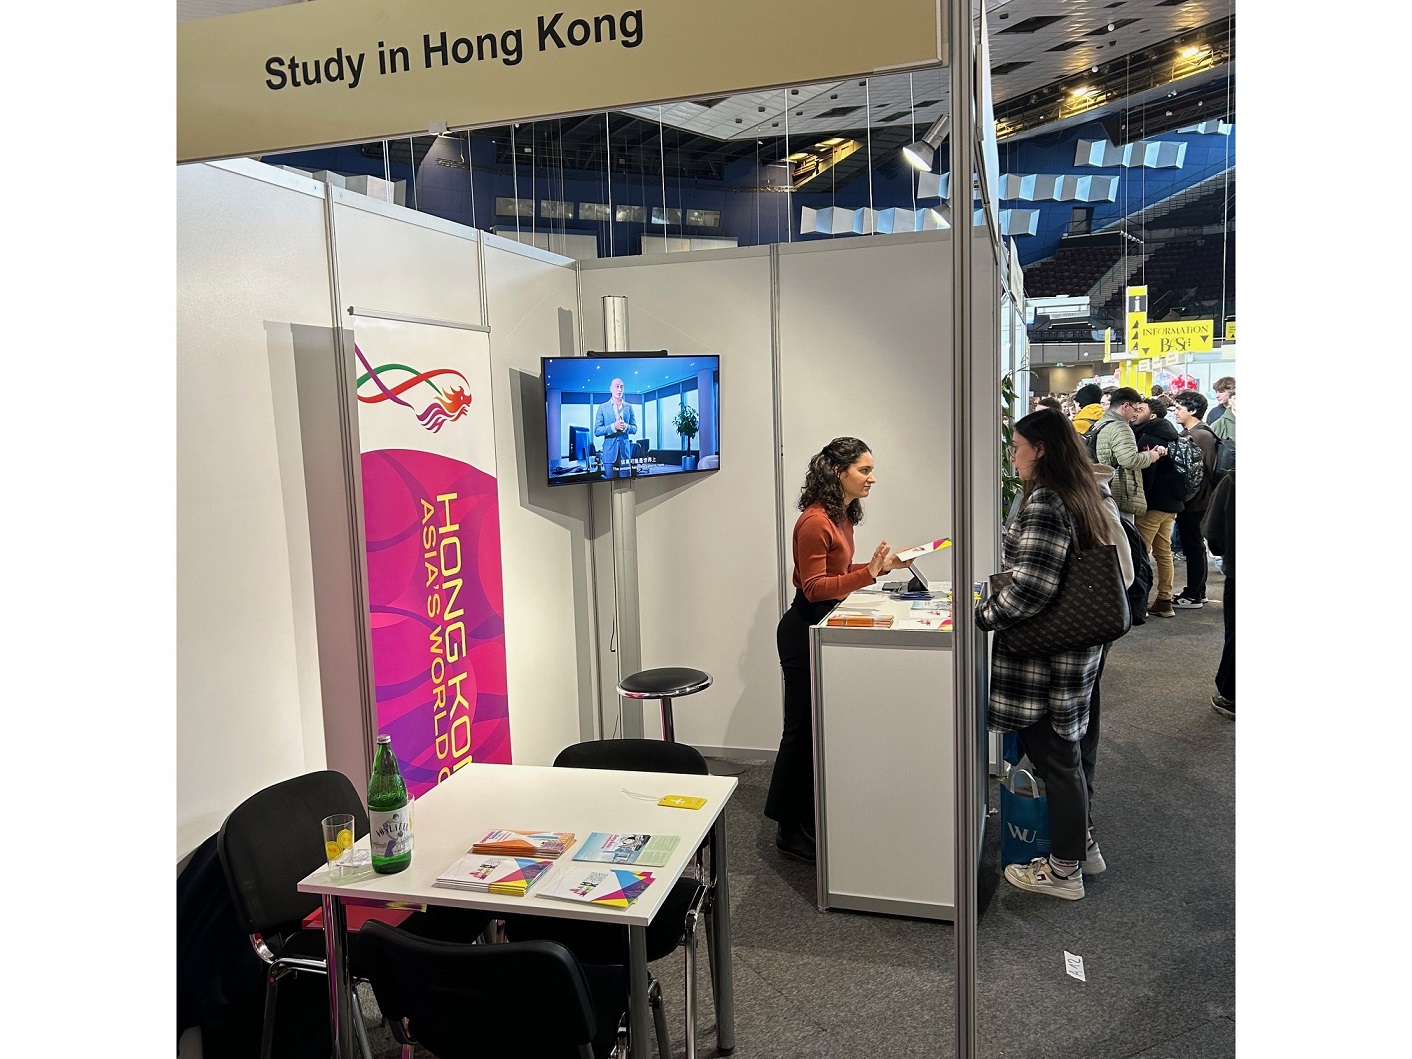 Das HKETO Berlin war mit einem Stand auf der österreichischen Bildungsmesse BeSt Wien vertreten, die vom 7. bis 10. März (MEZ) stattfand, um Studienmöglichkeiten in Hongkong vorzustellen.